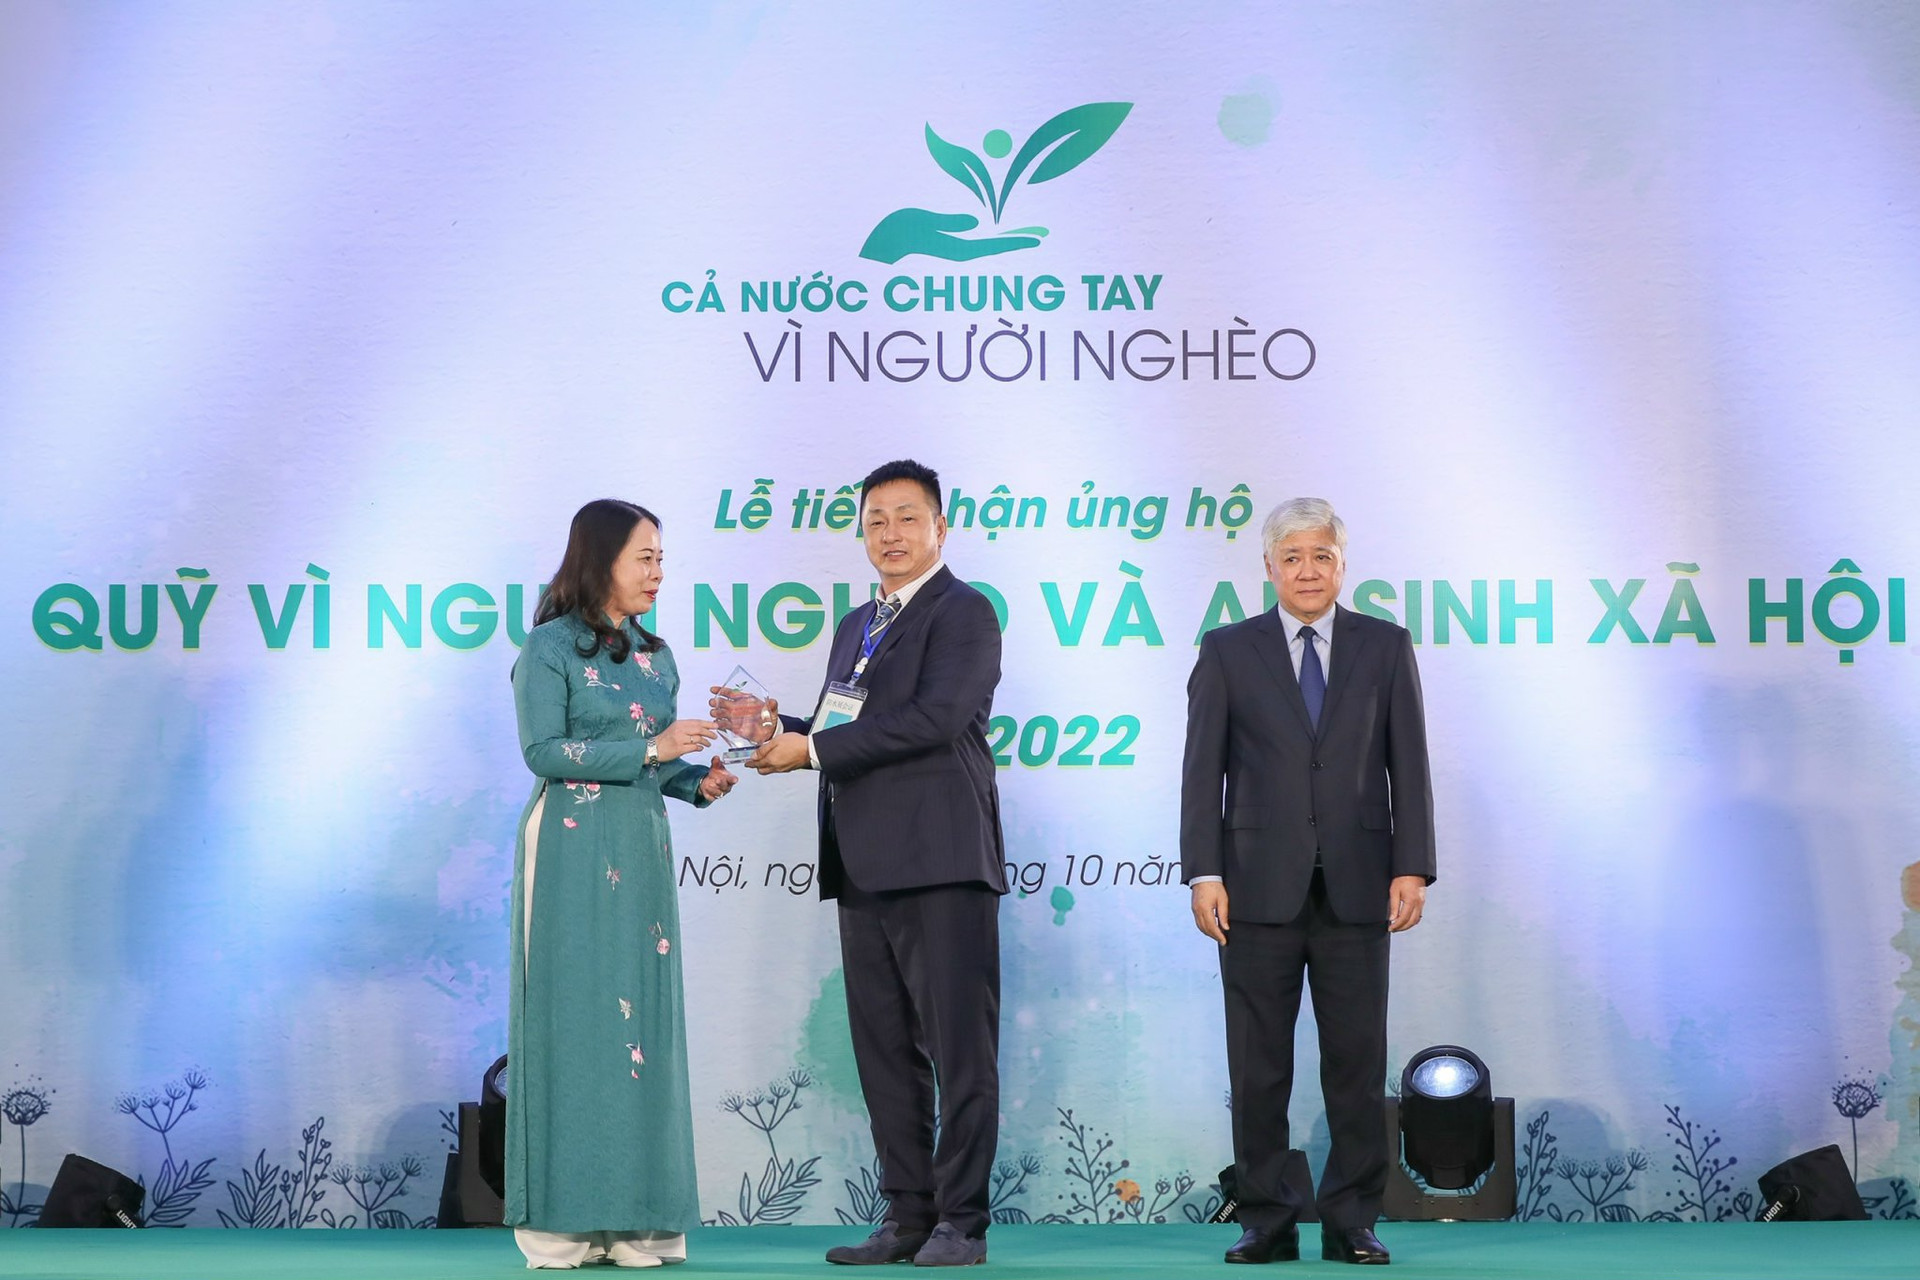 Ông Lê Huy Hoàng (ở giữa) nhận biểu trưng kỷ niệm của chương trình Quỹ ”Vì người nghèo” 2022.